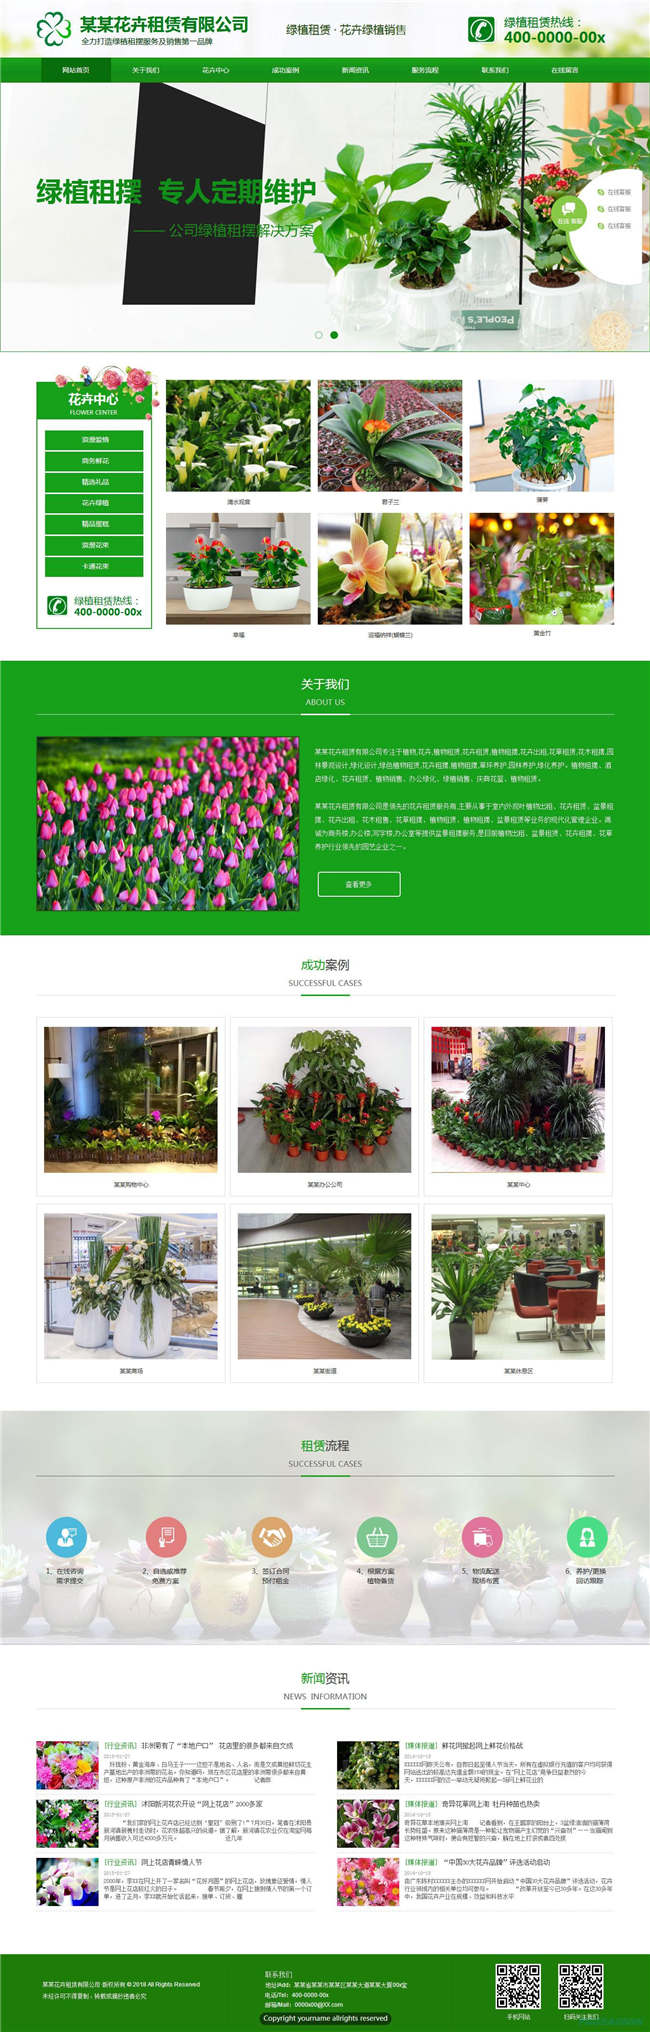 园艺花卉农业畜牧养殖种植花卉网站WP整站模板(含手机版)预览图